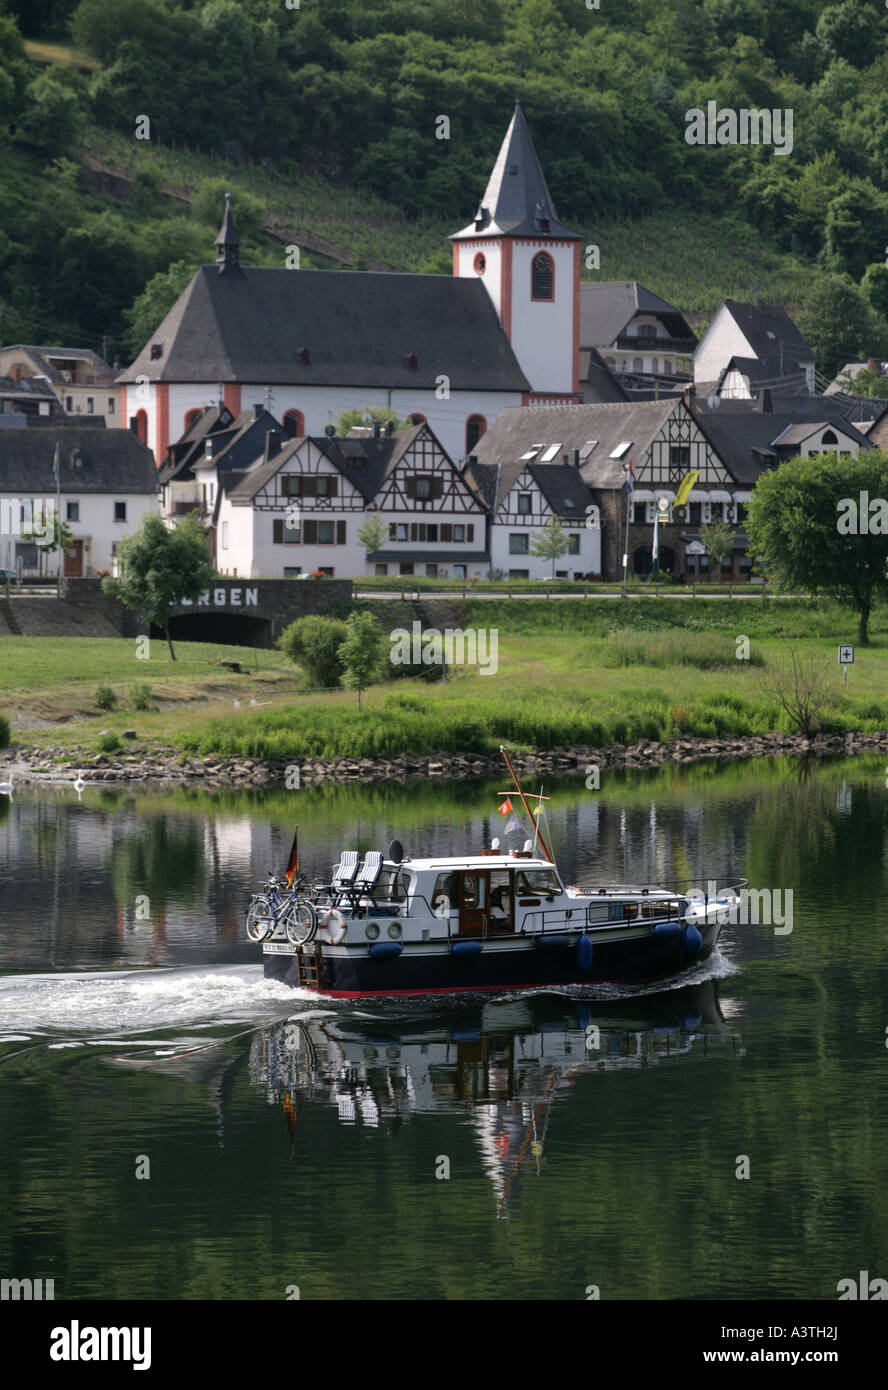 La piccola città Burgen nella Valle della Mosella, Burgen, Rhineland-Palatine, Germania Foto Stock